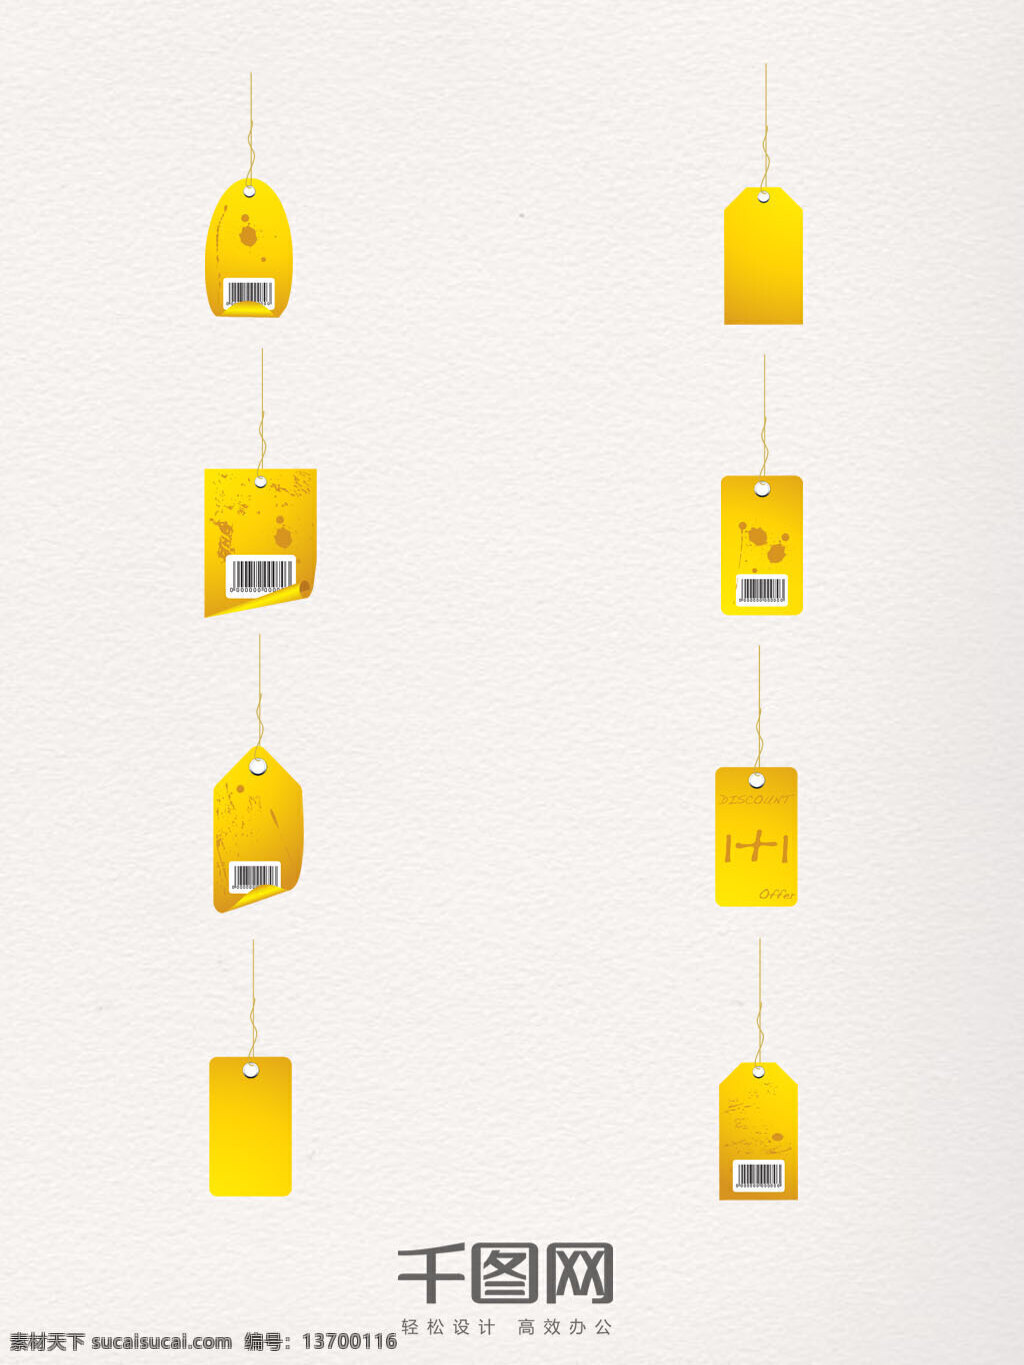 金色 标签 模板 装饰 元素 价格吊牌 吊牌 创意 条形码 标签模板 创意模板